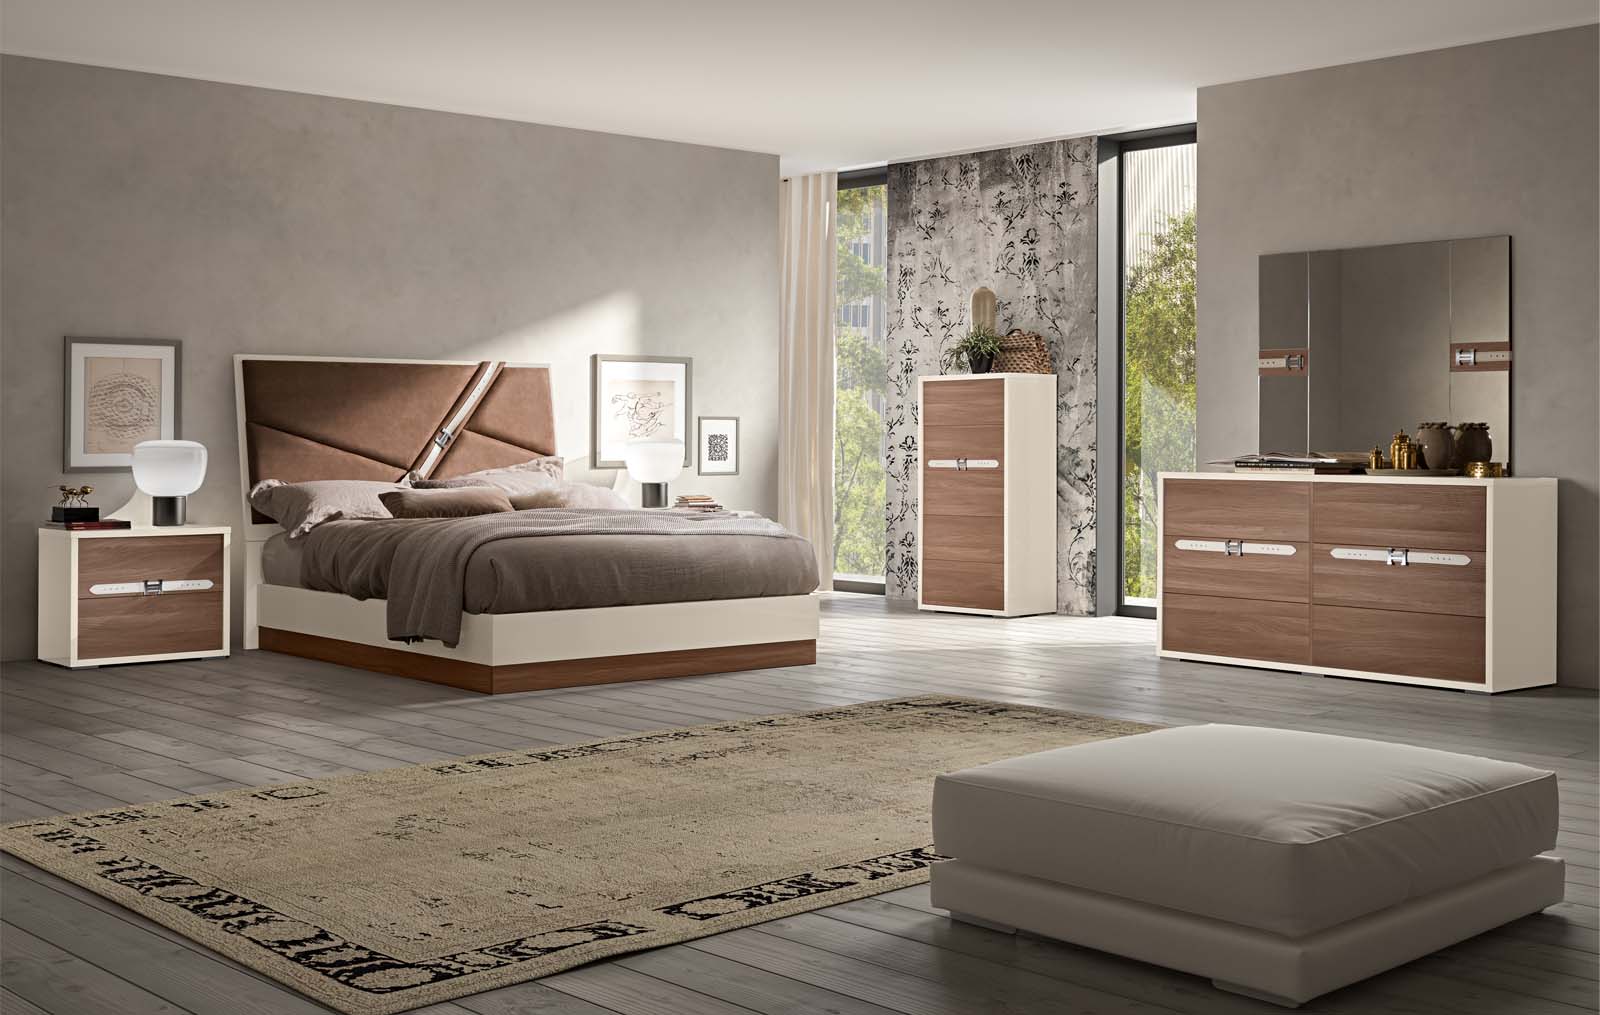 designer bedroom furniture designs